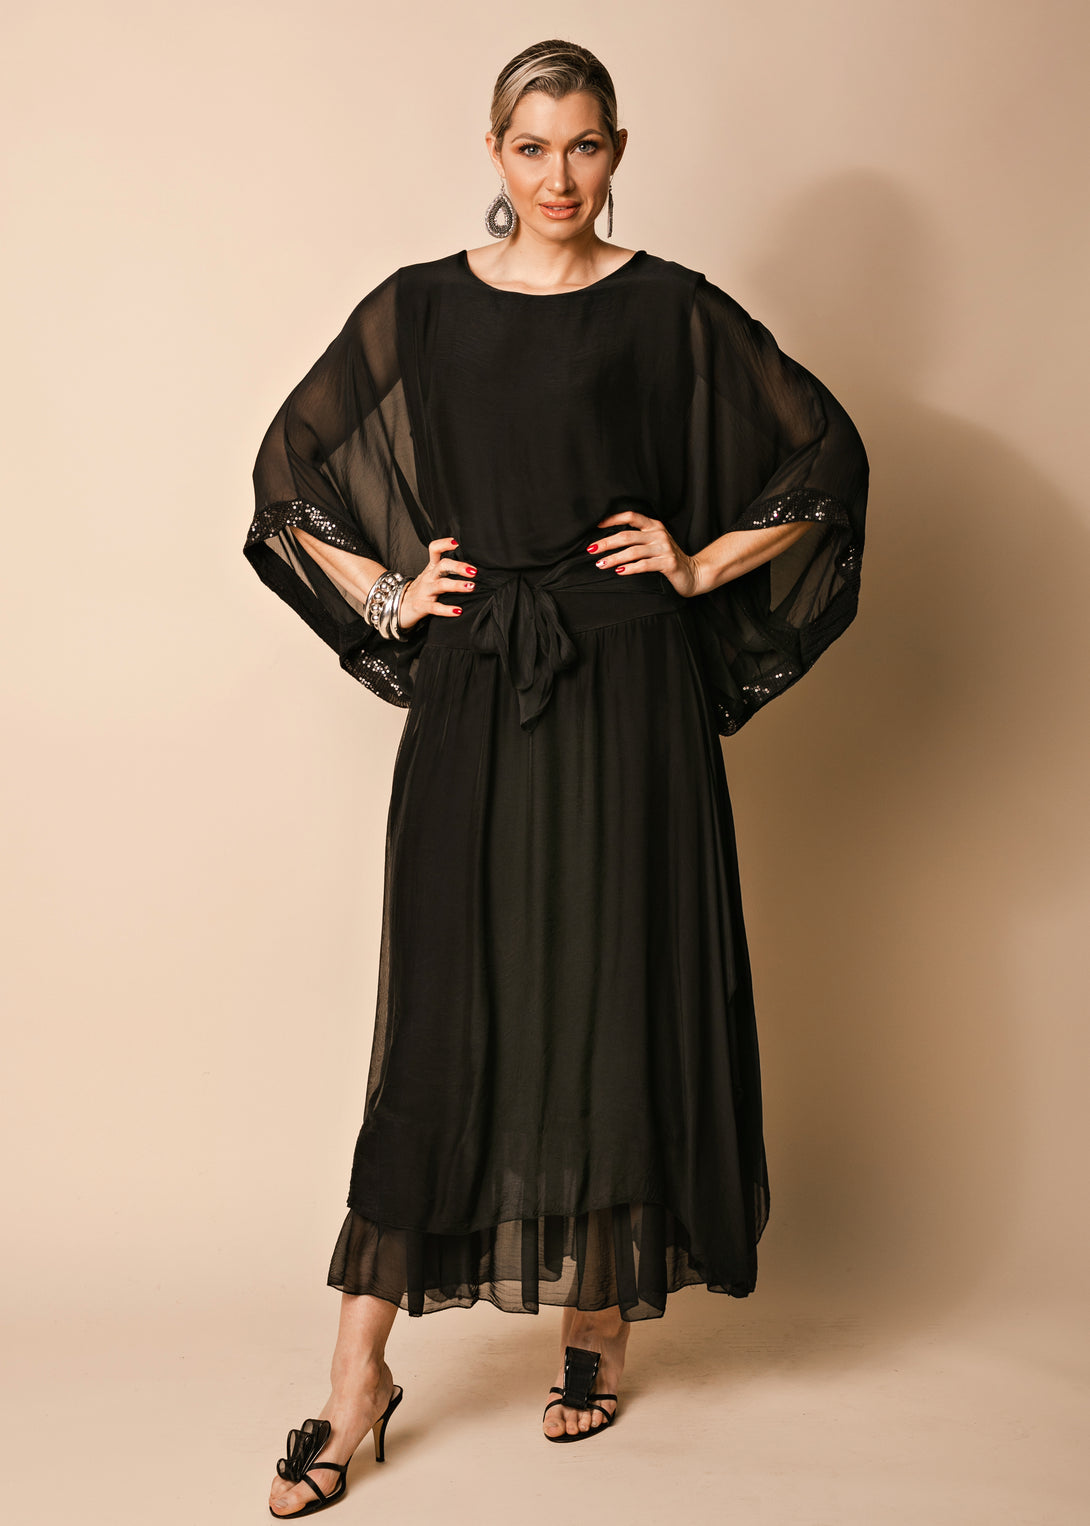 Nala Silk Skirt in Onyx - Imagine Fashion